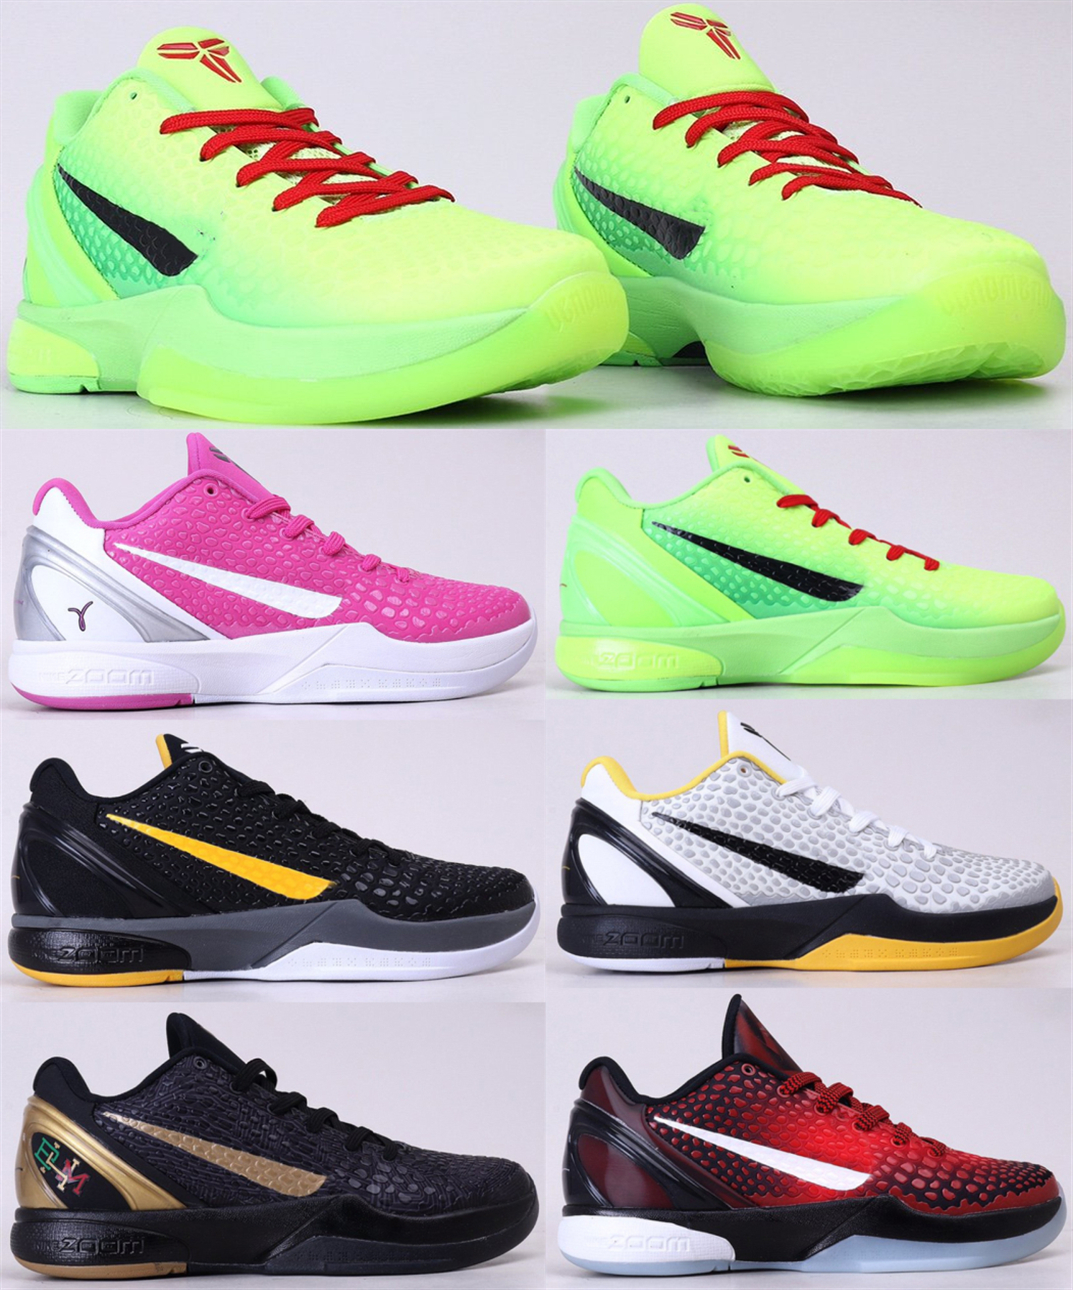 Zapatos Xdr Online | Zapatos Xdr Online en venta en es.dhgate.com